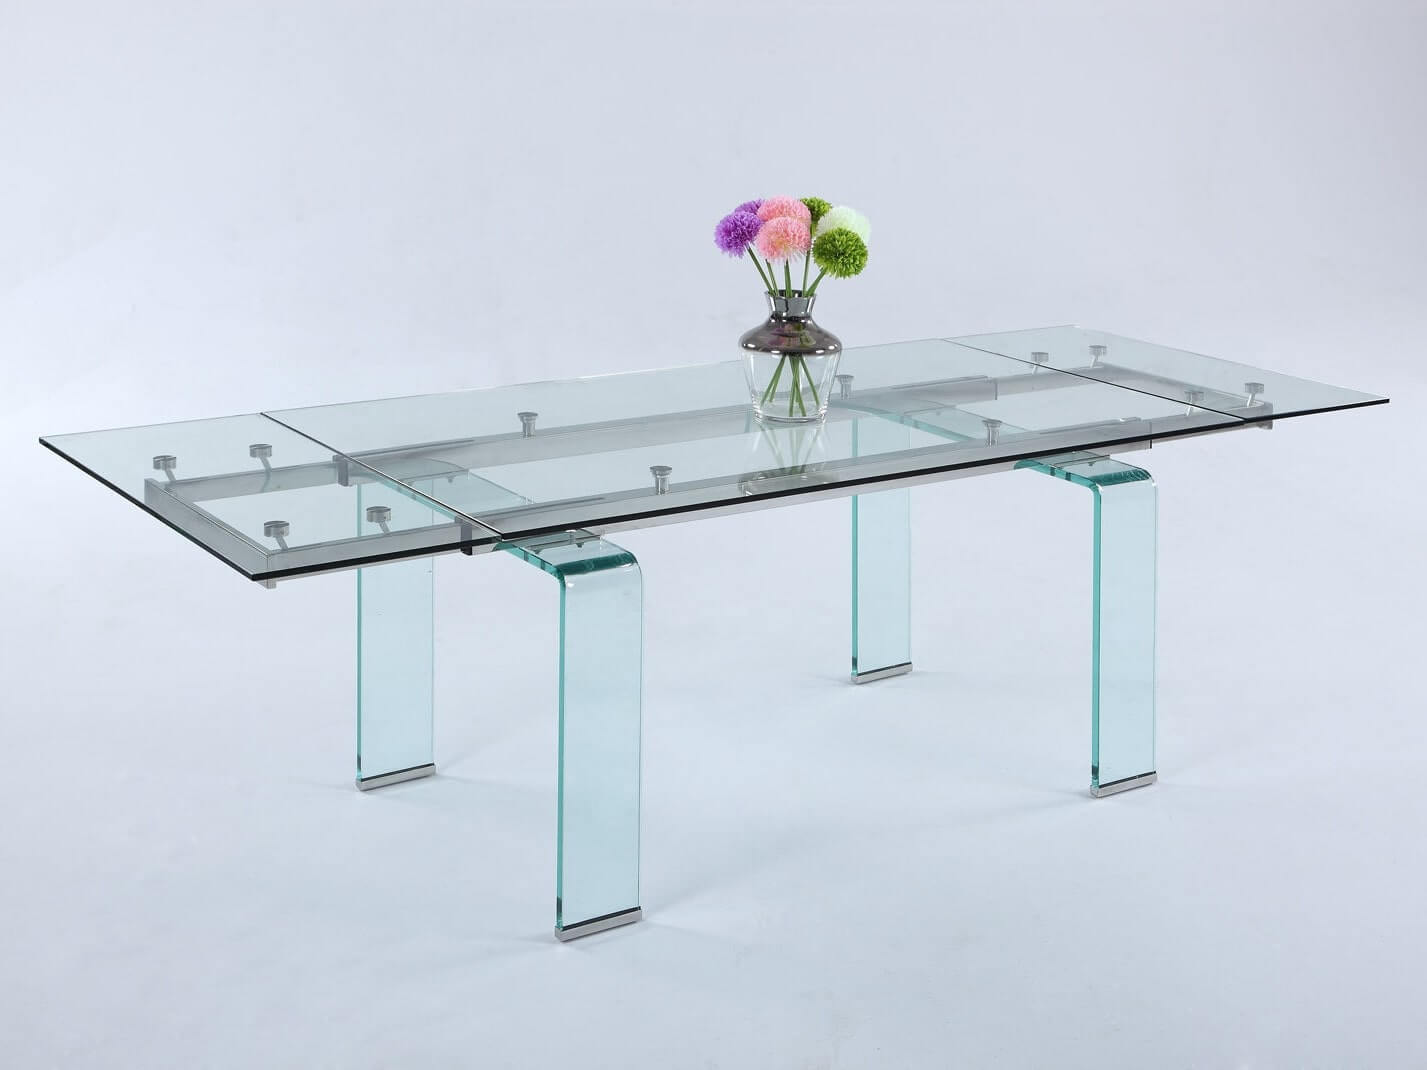 üzerinde çiçek olan cam masa 